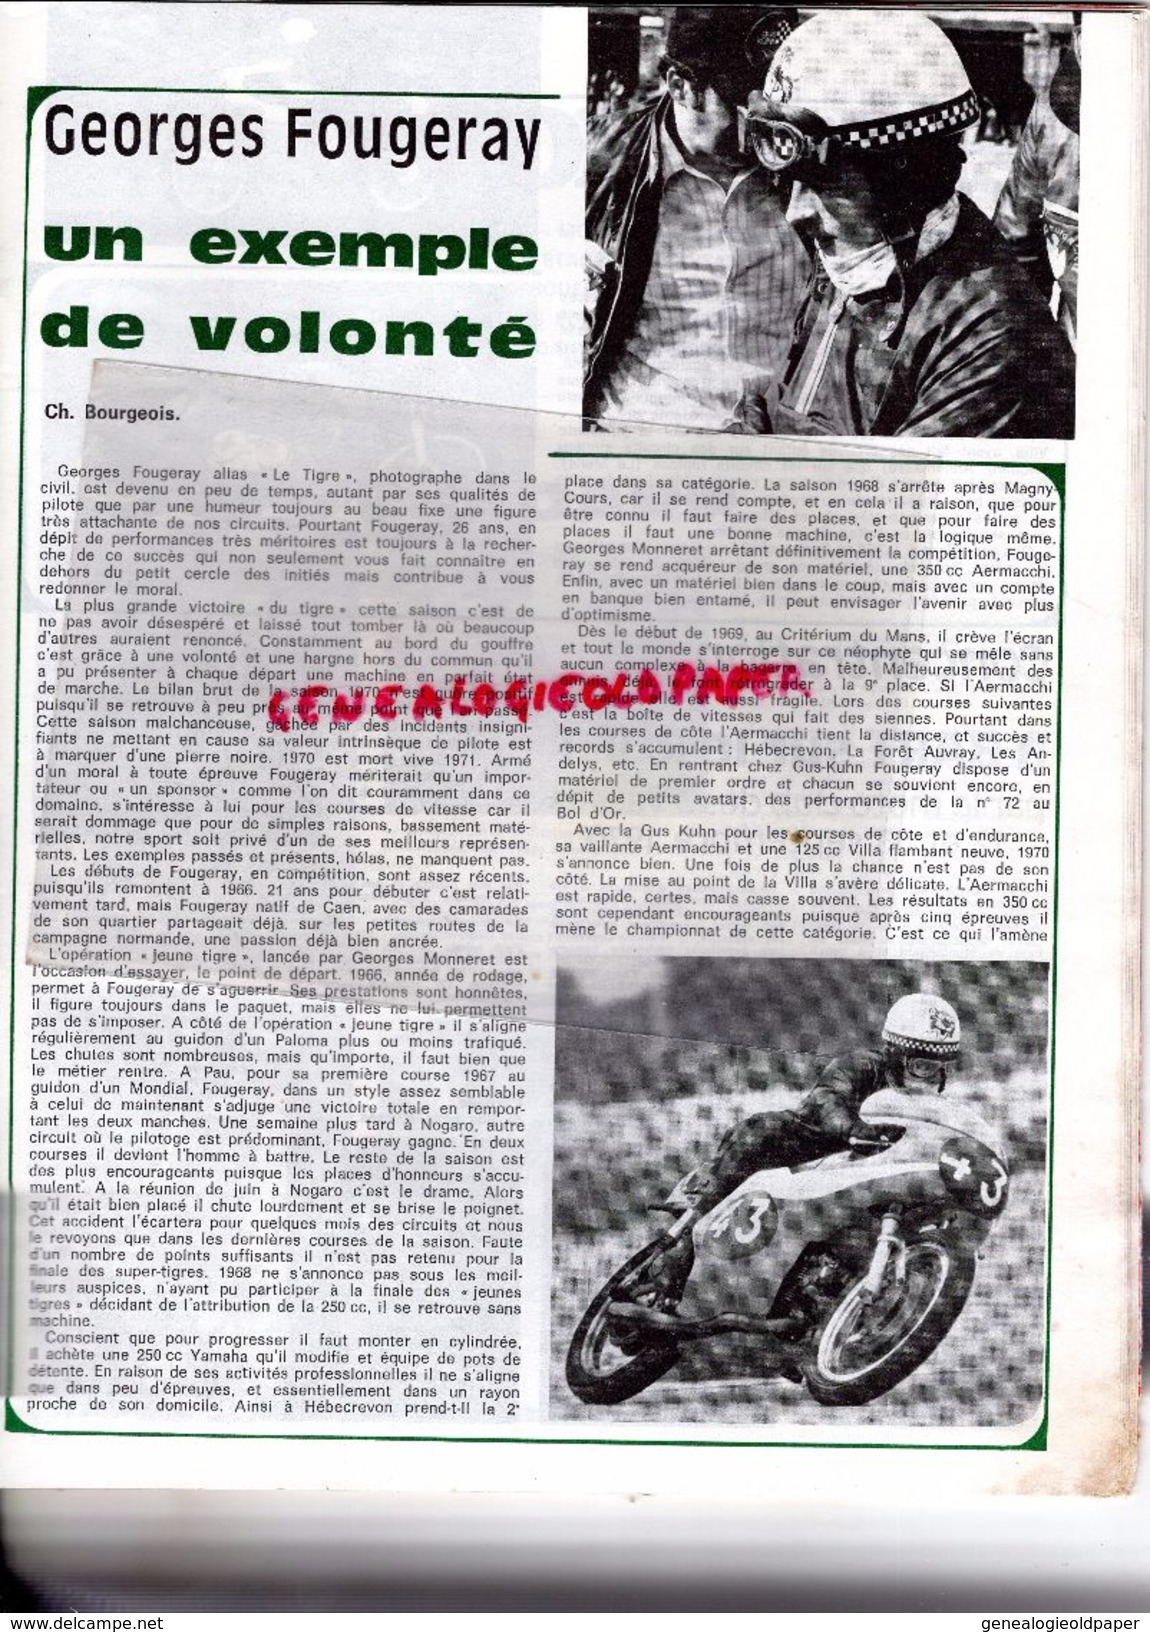 MOTO REVUE -N° 1998-17-10-1970-HERCULES-WANKEL-AUTRICHE-500 SUZUKI ROCA-125 DERBY-PARIS COLOGNE-JAWA CZ-POCH NEUILLY-